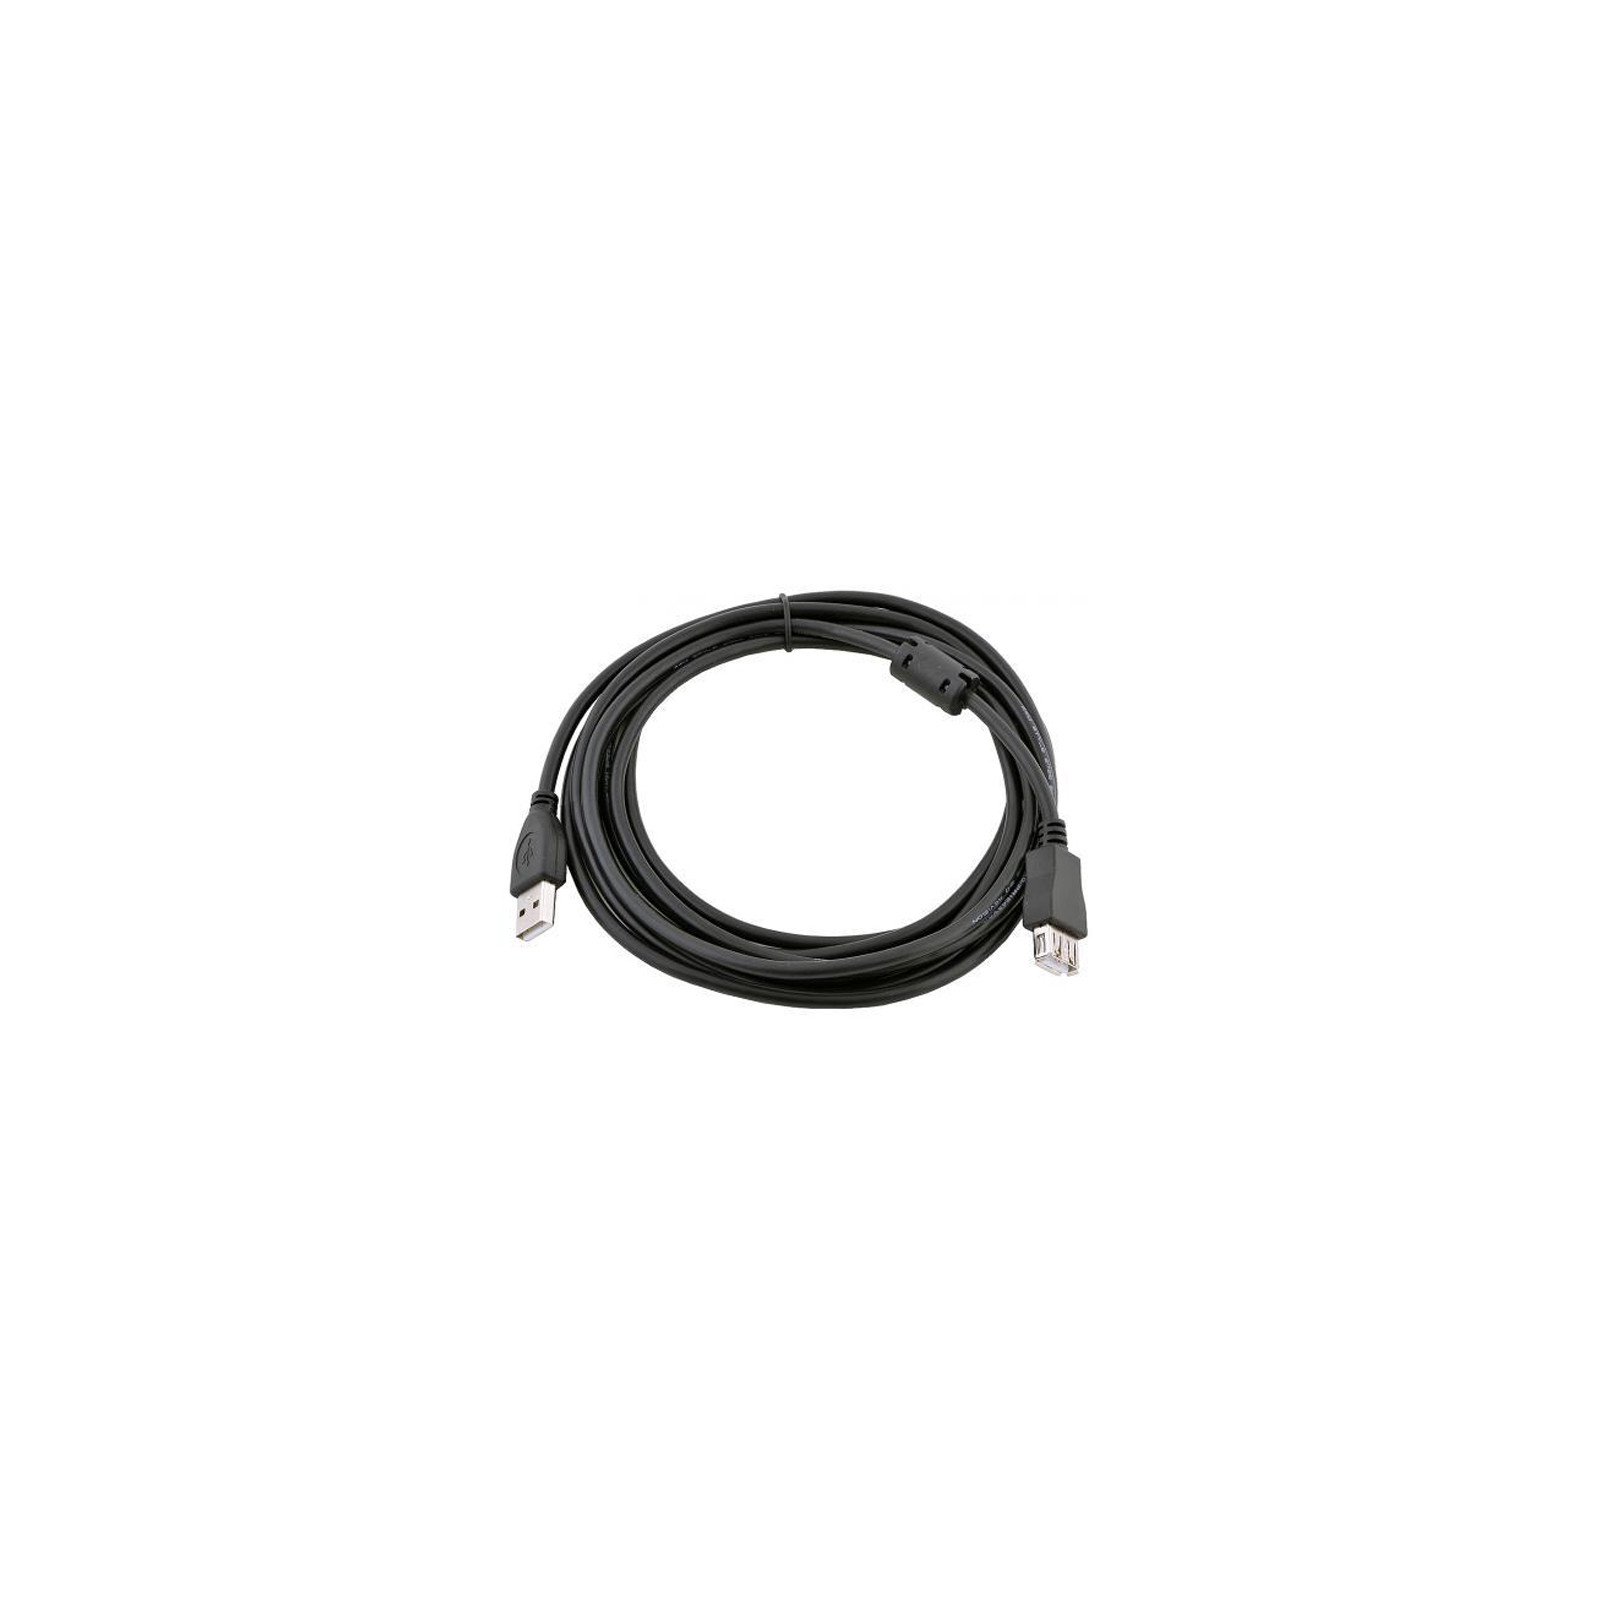 Дата кабель USB 2.0 AM/AF 4.5m Patron (CAB-PN-AMAF-45F)